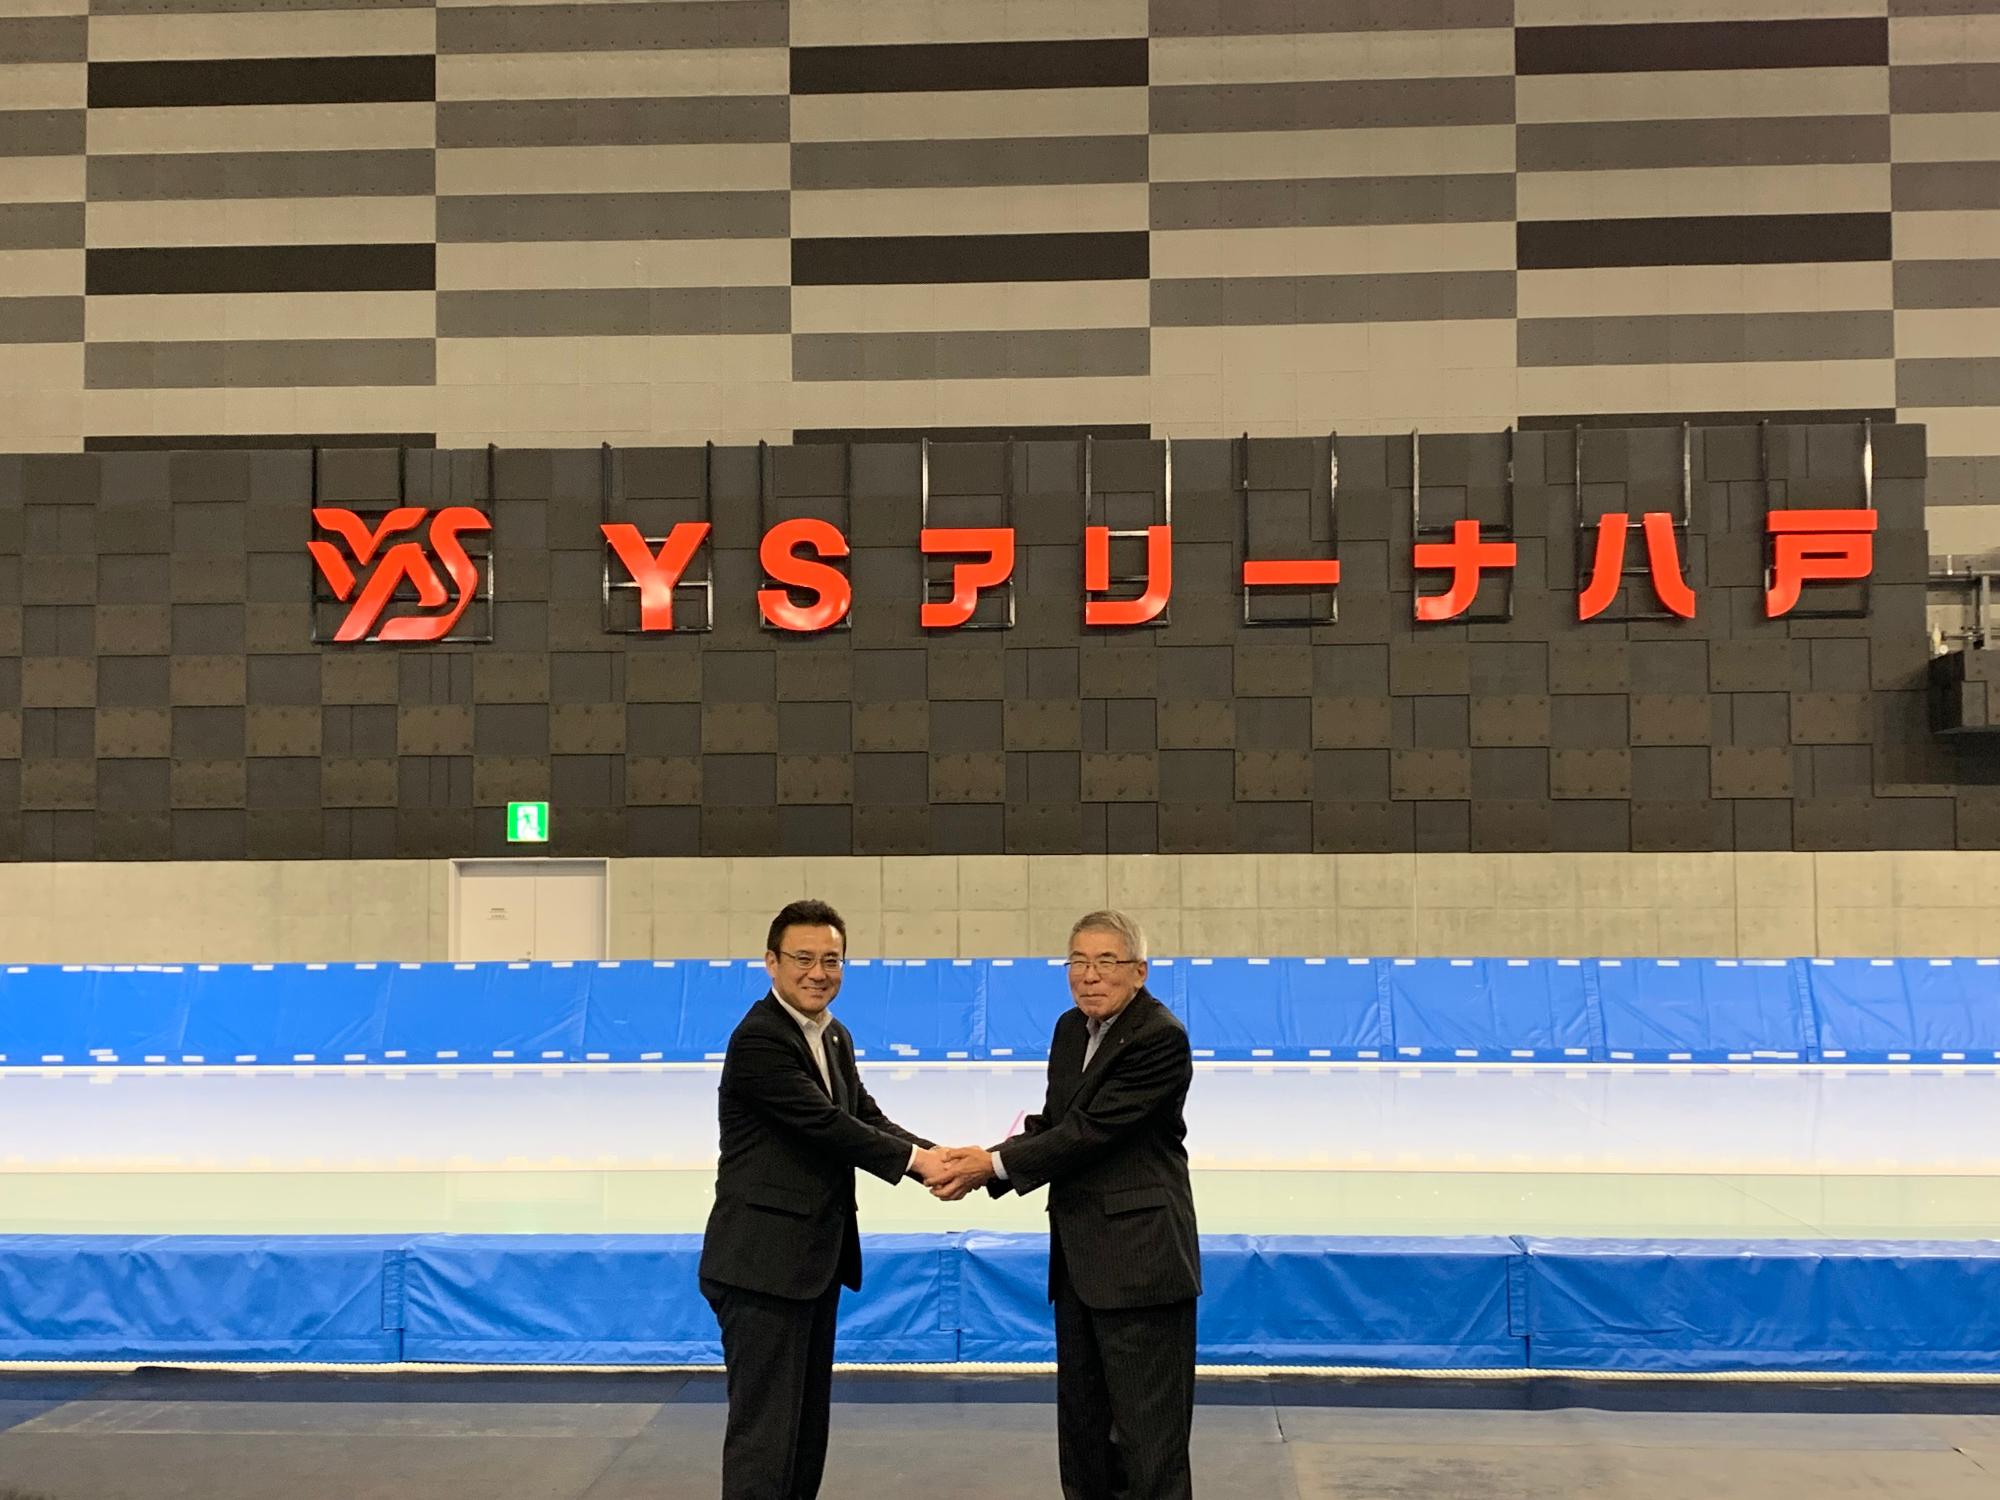 吉田社長と八戸市長がYSアリーナ八戸の特定呼称を背景に握手している写真